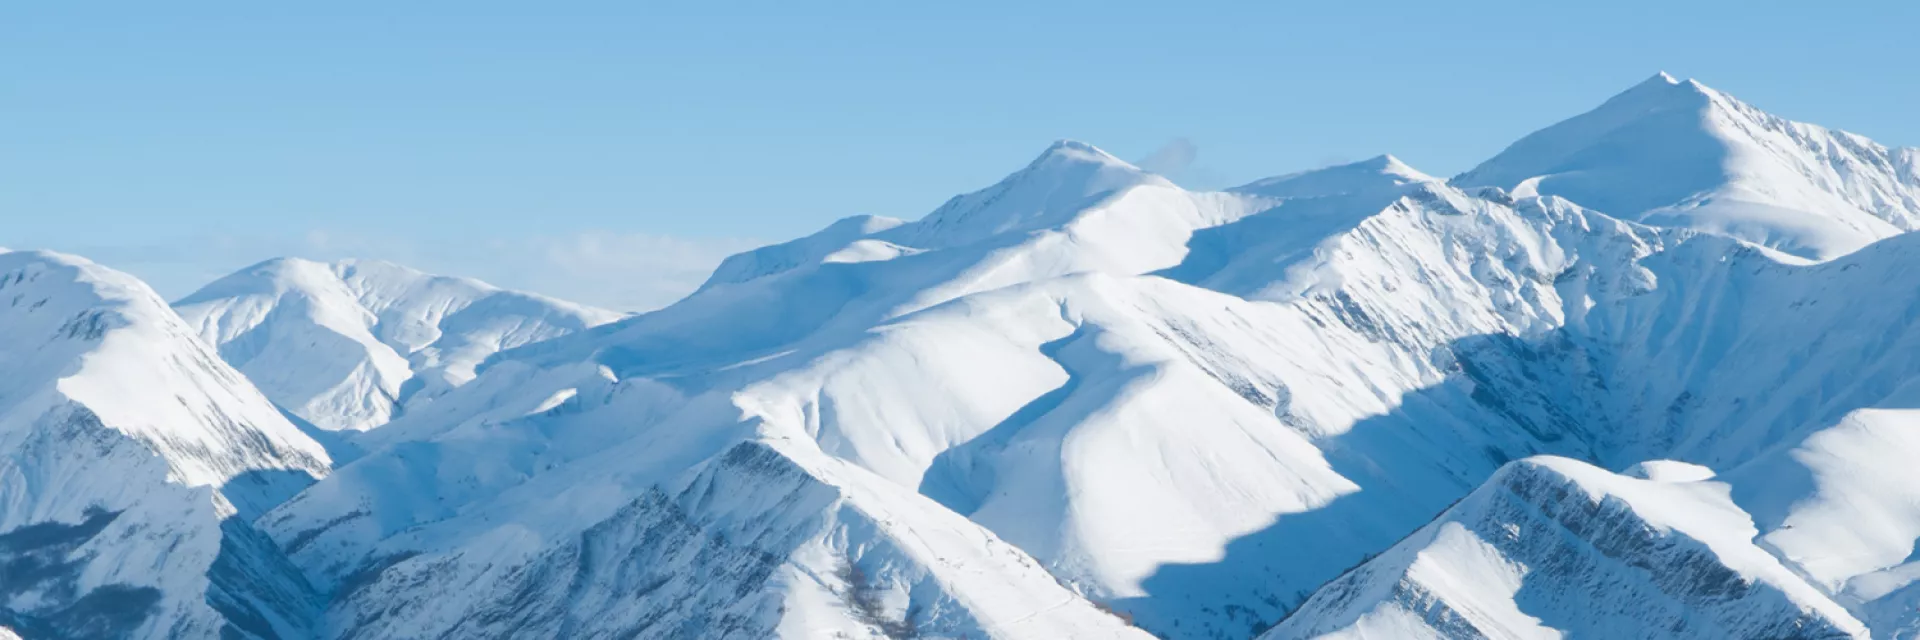 Activités à faire aux 2 Alpes durant les vacances d'hiver